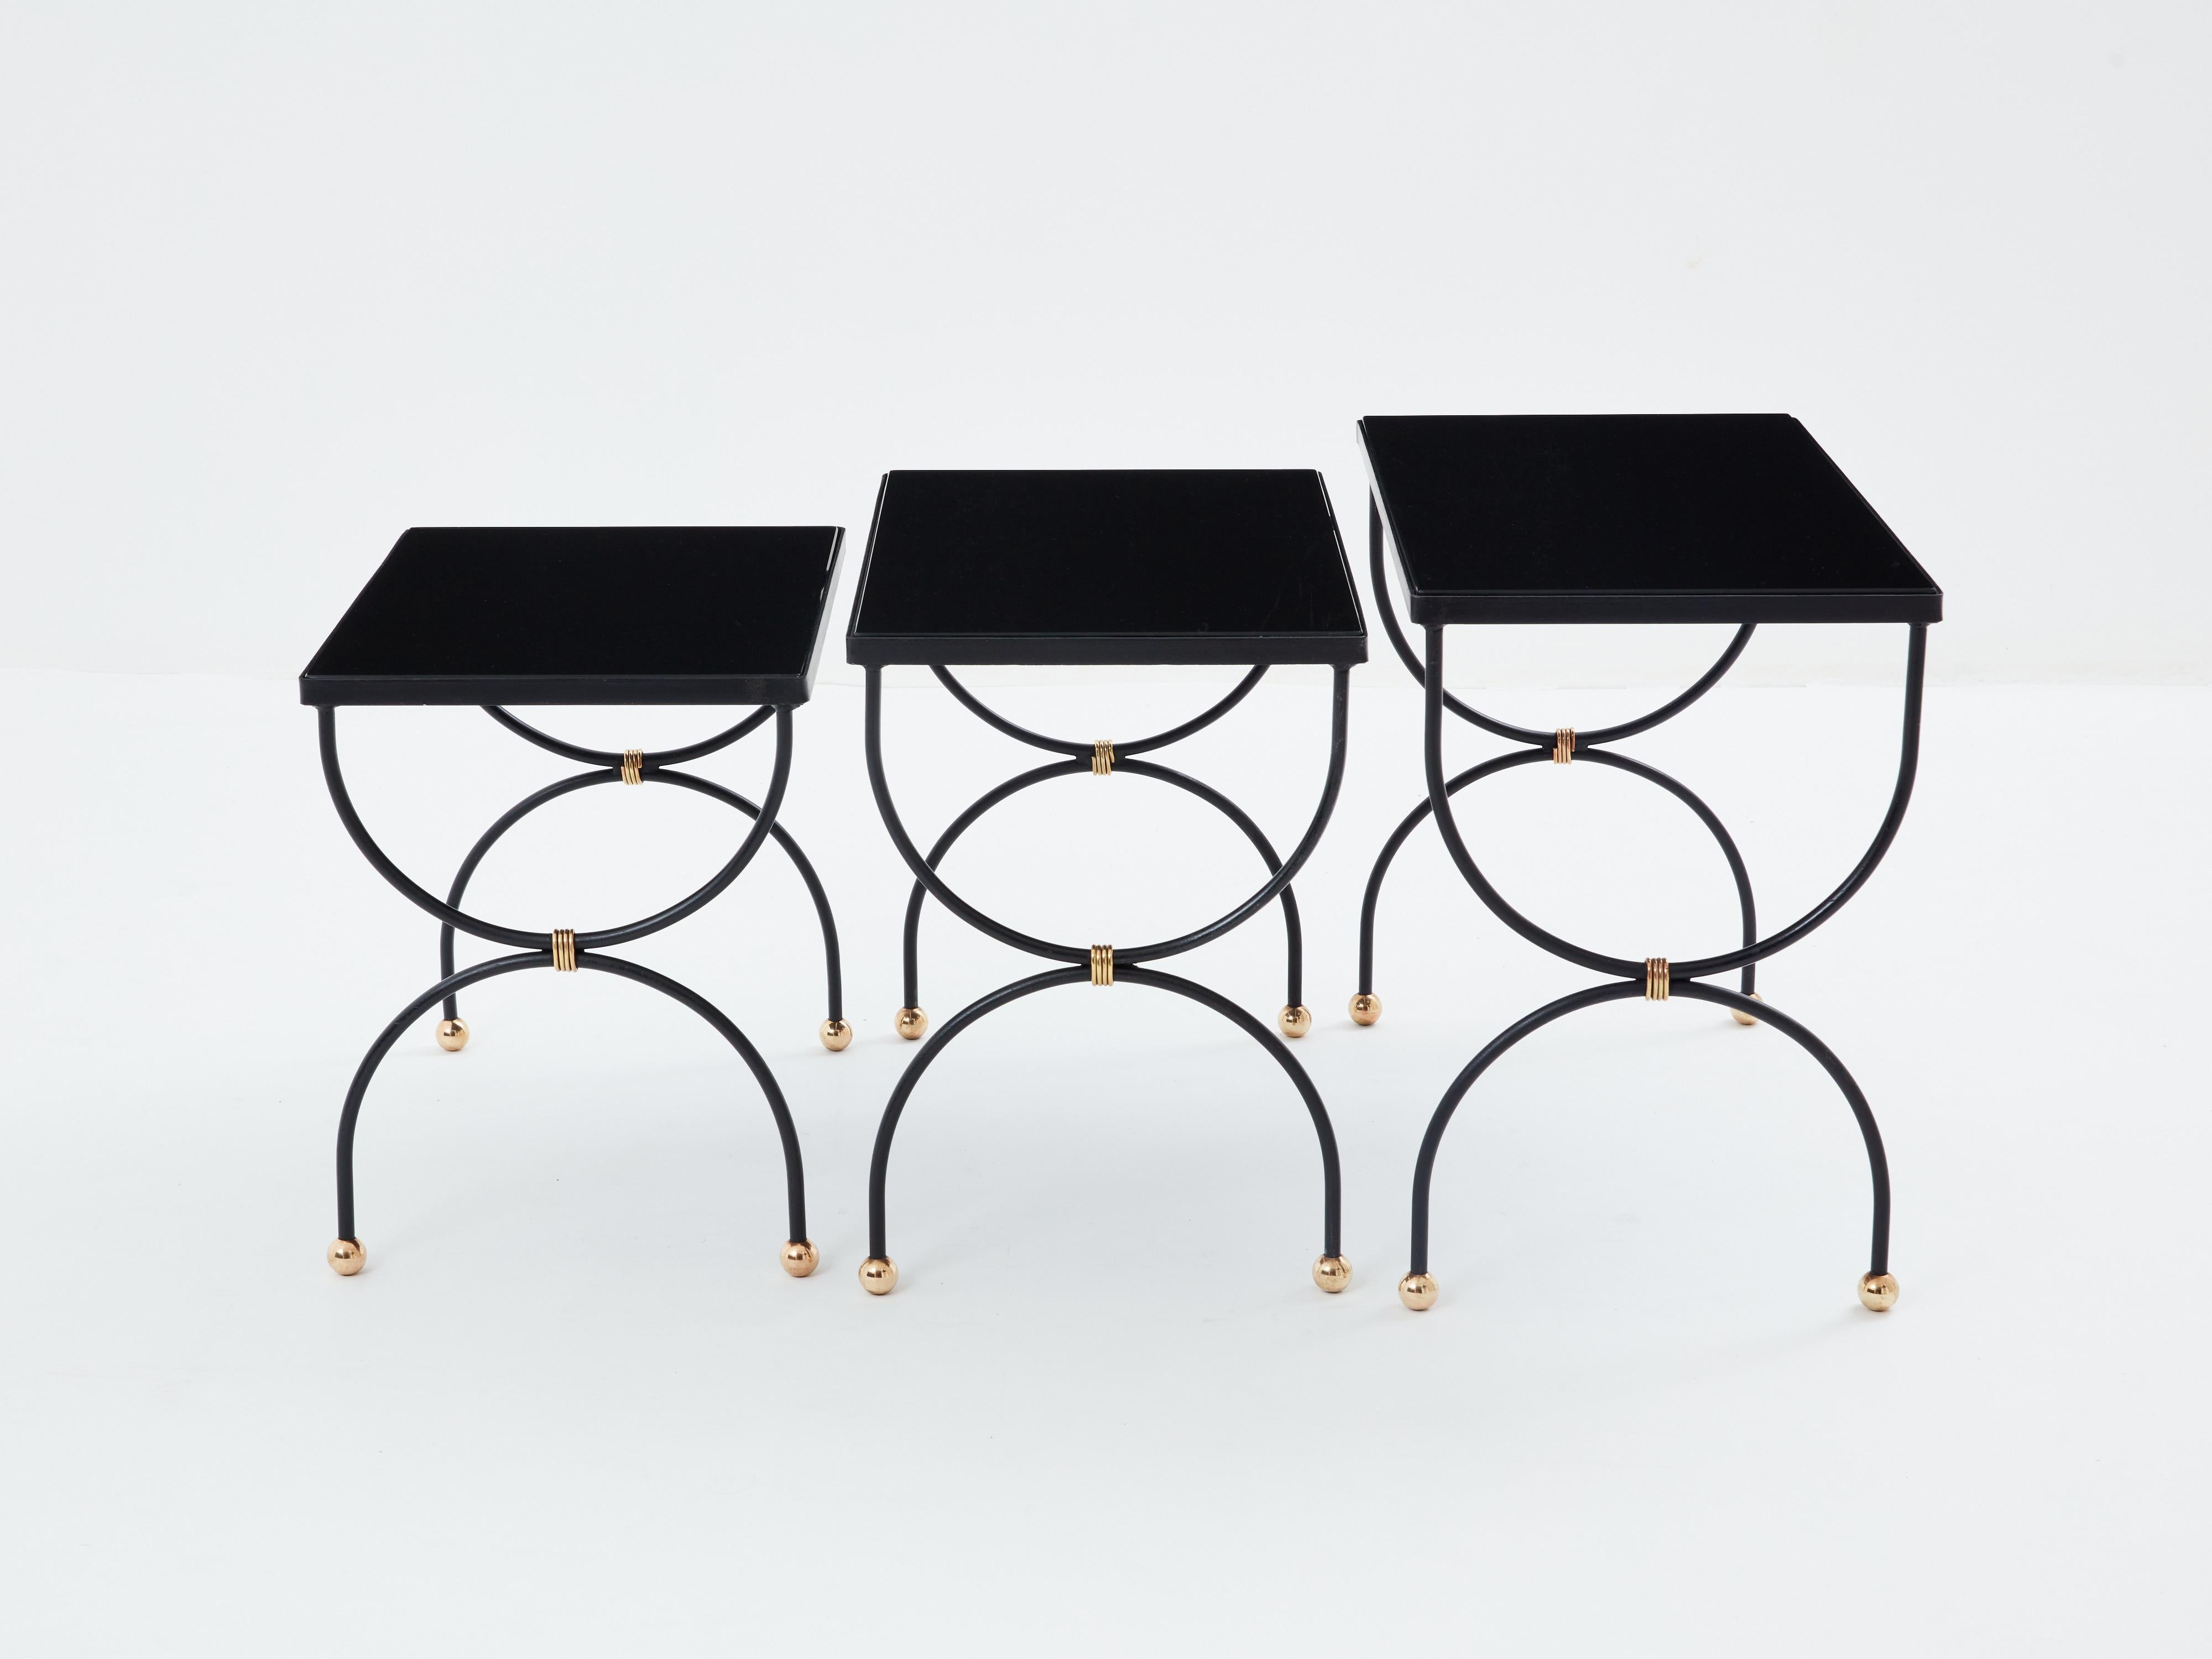 Ces tables gigognes en fer noir et laiton, fabriquées par la Maison Jansen au début des années 1960, confèrent à votre intérieur une véritable élégance. Chaque table est dotée d'un plateau noir opalin et de magnifiques détails en laiton. Ce sont de